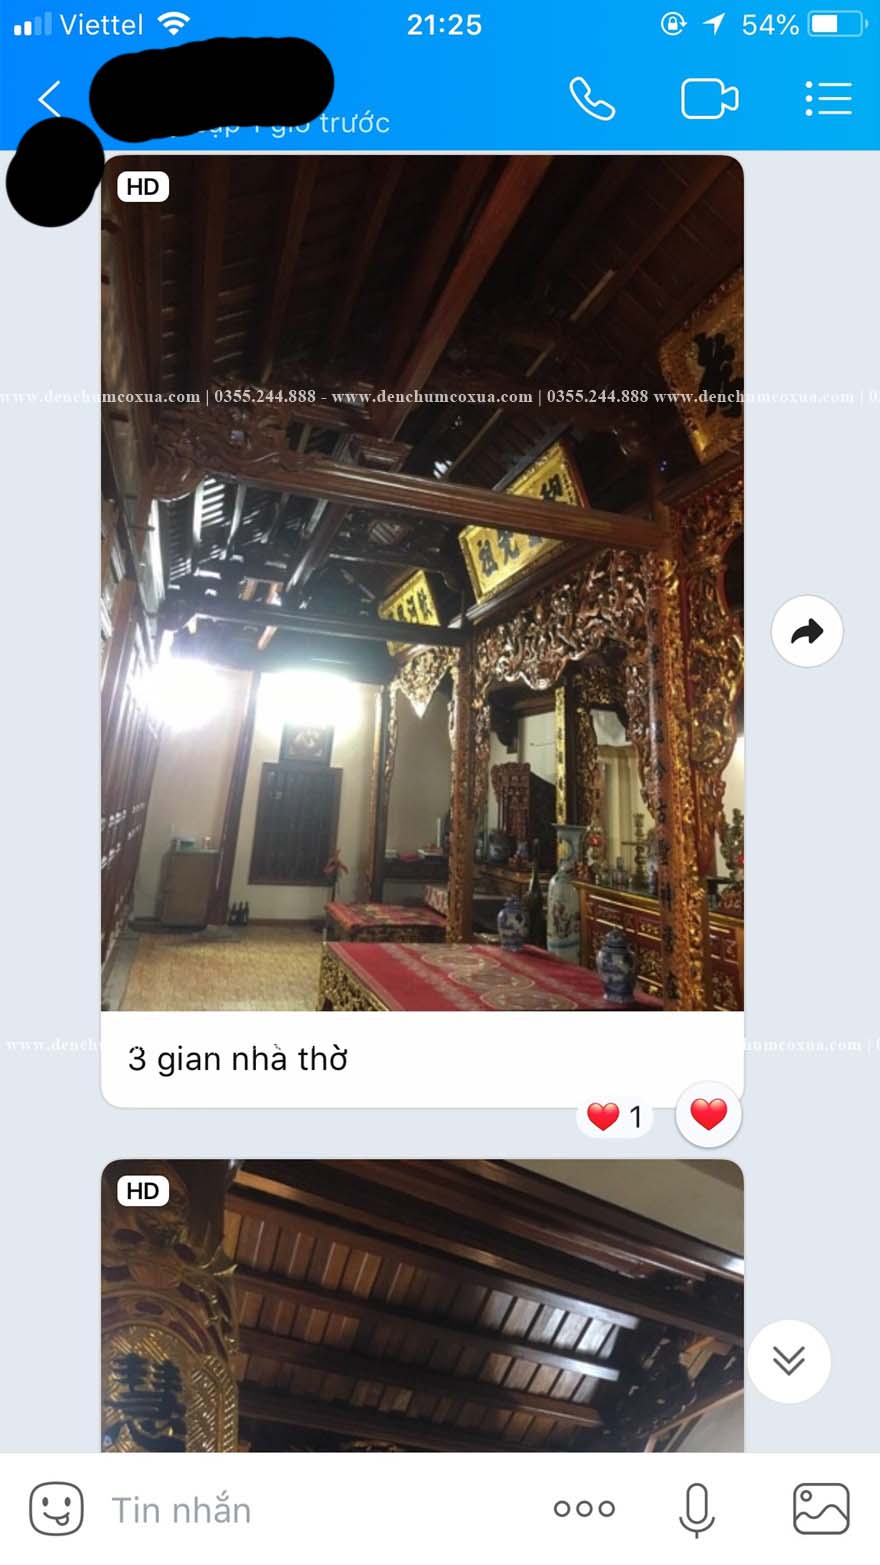 Review nơi bán đèn chùm nhà gỗ tại Hà Nội uy tín